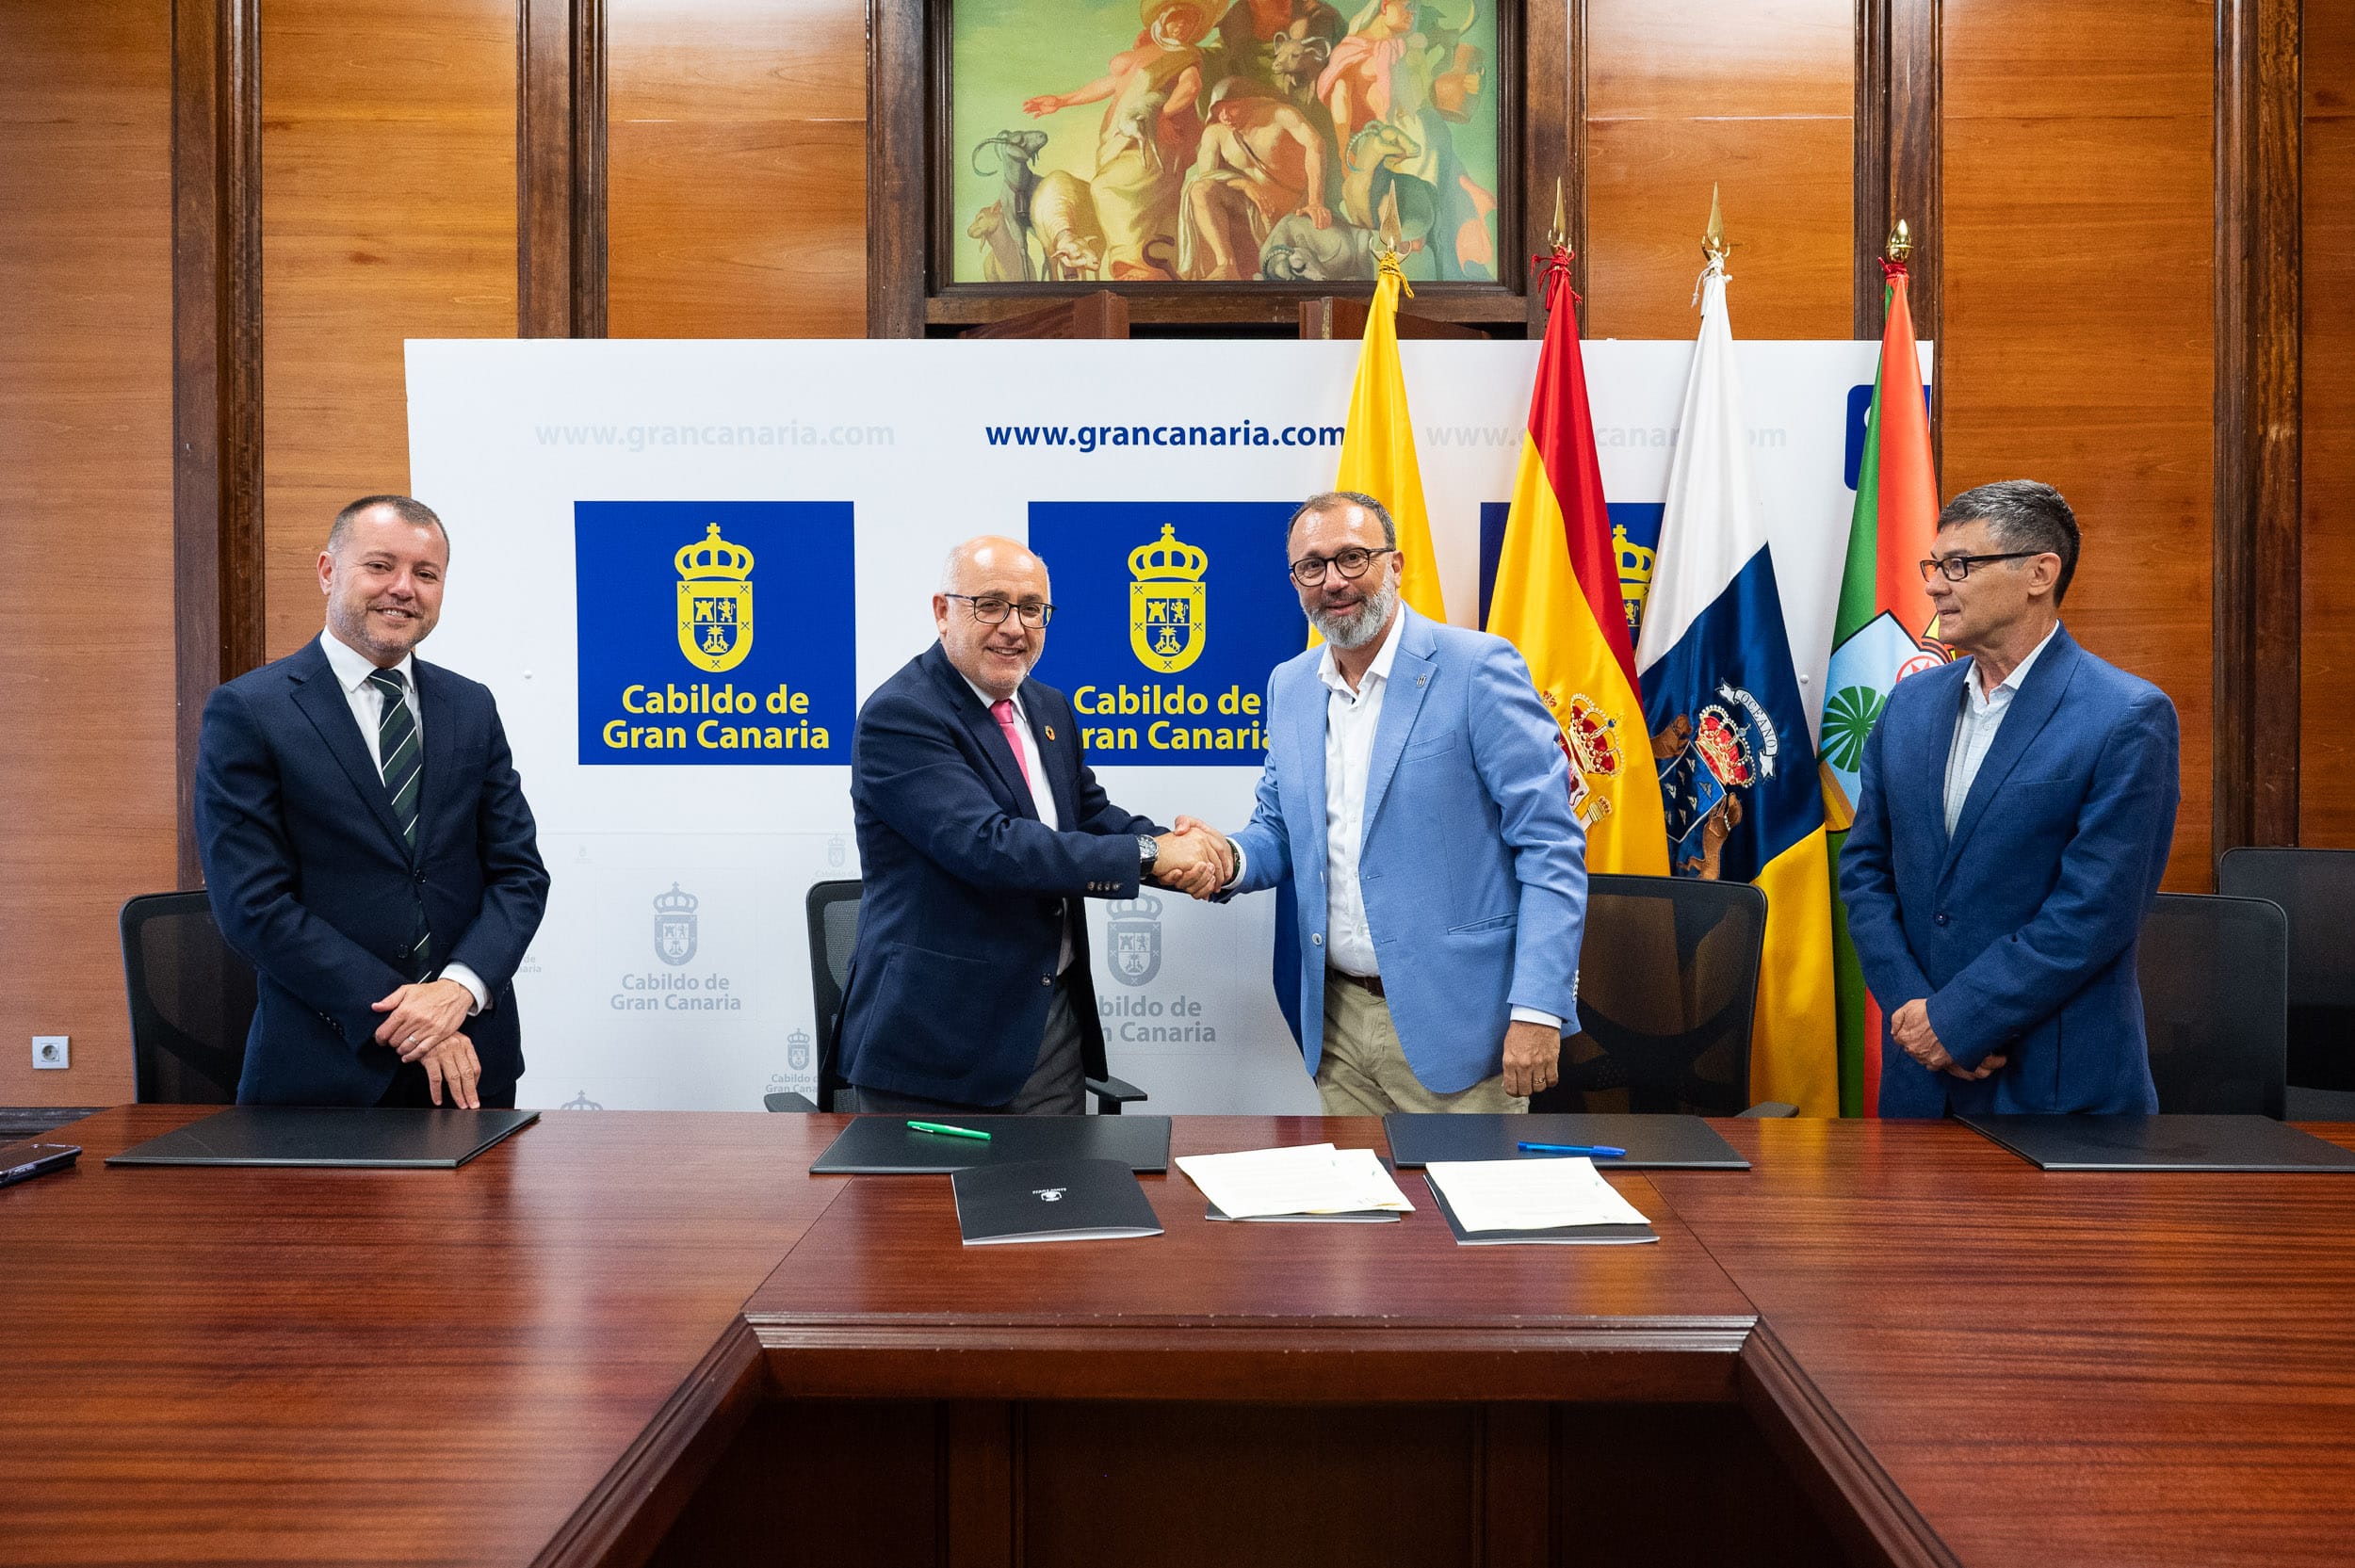 El Cabildo de Gran Canaria cede al Ayuntamiento de Santa Lucía la gestión integral del yacimiento arqueológico de La Fortaleza durante 25 años